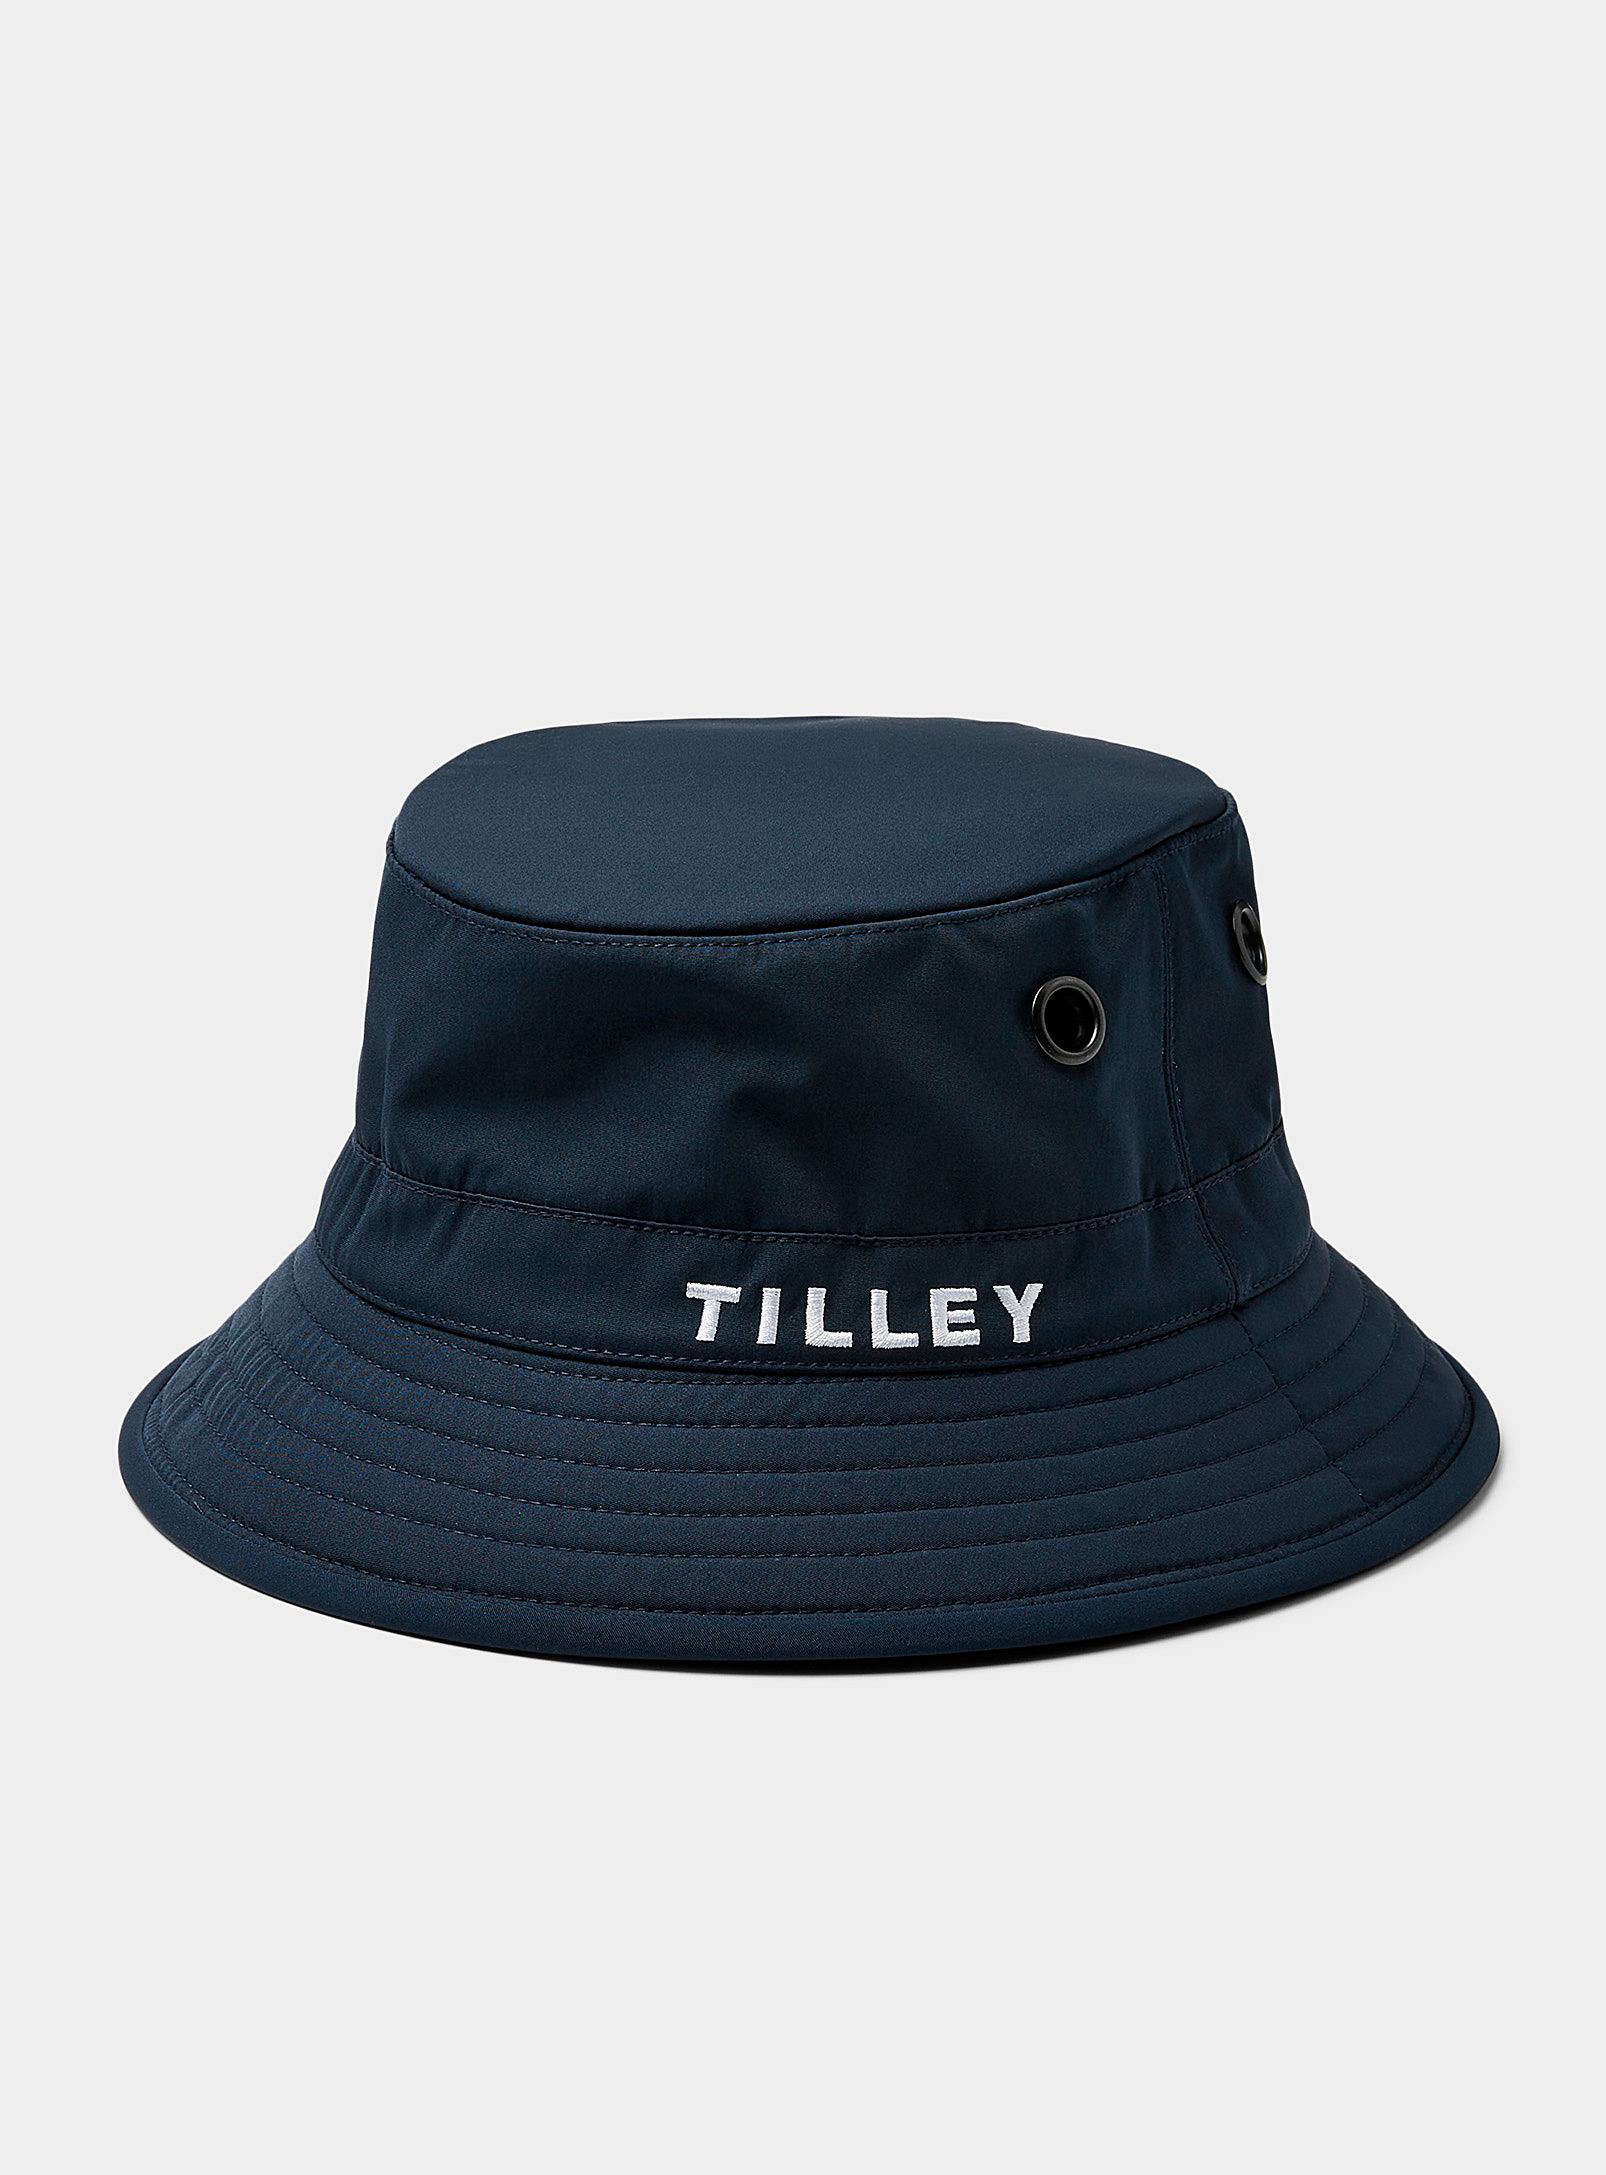 Tilley Embroidered Logo Bucket Hat In Indigo/dark Blue